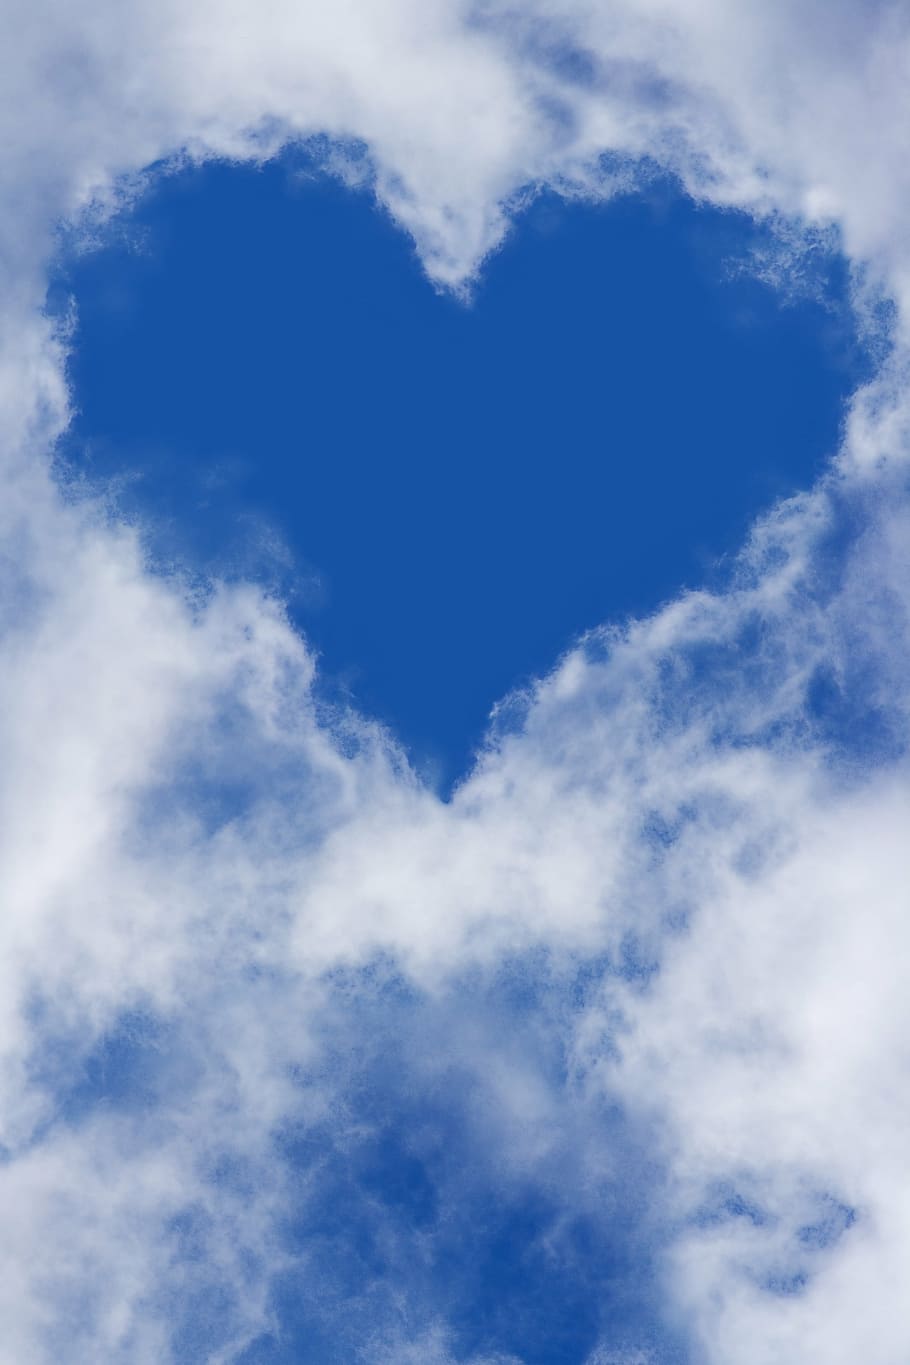 nube de fotografía con temas de corazón, corazón, cielo, nubes, cielo azul, nube - cielo, azul, amor, fondos, solo cielo